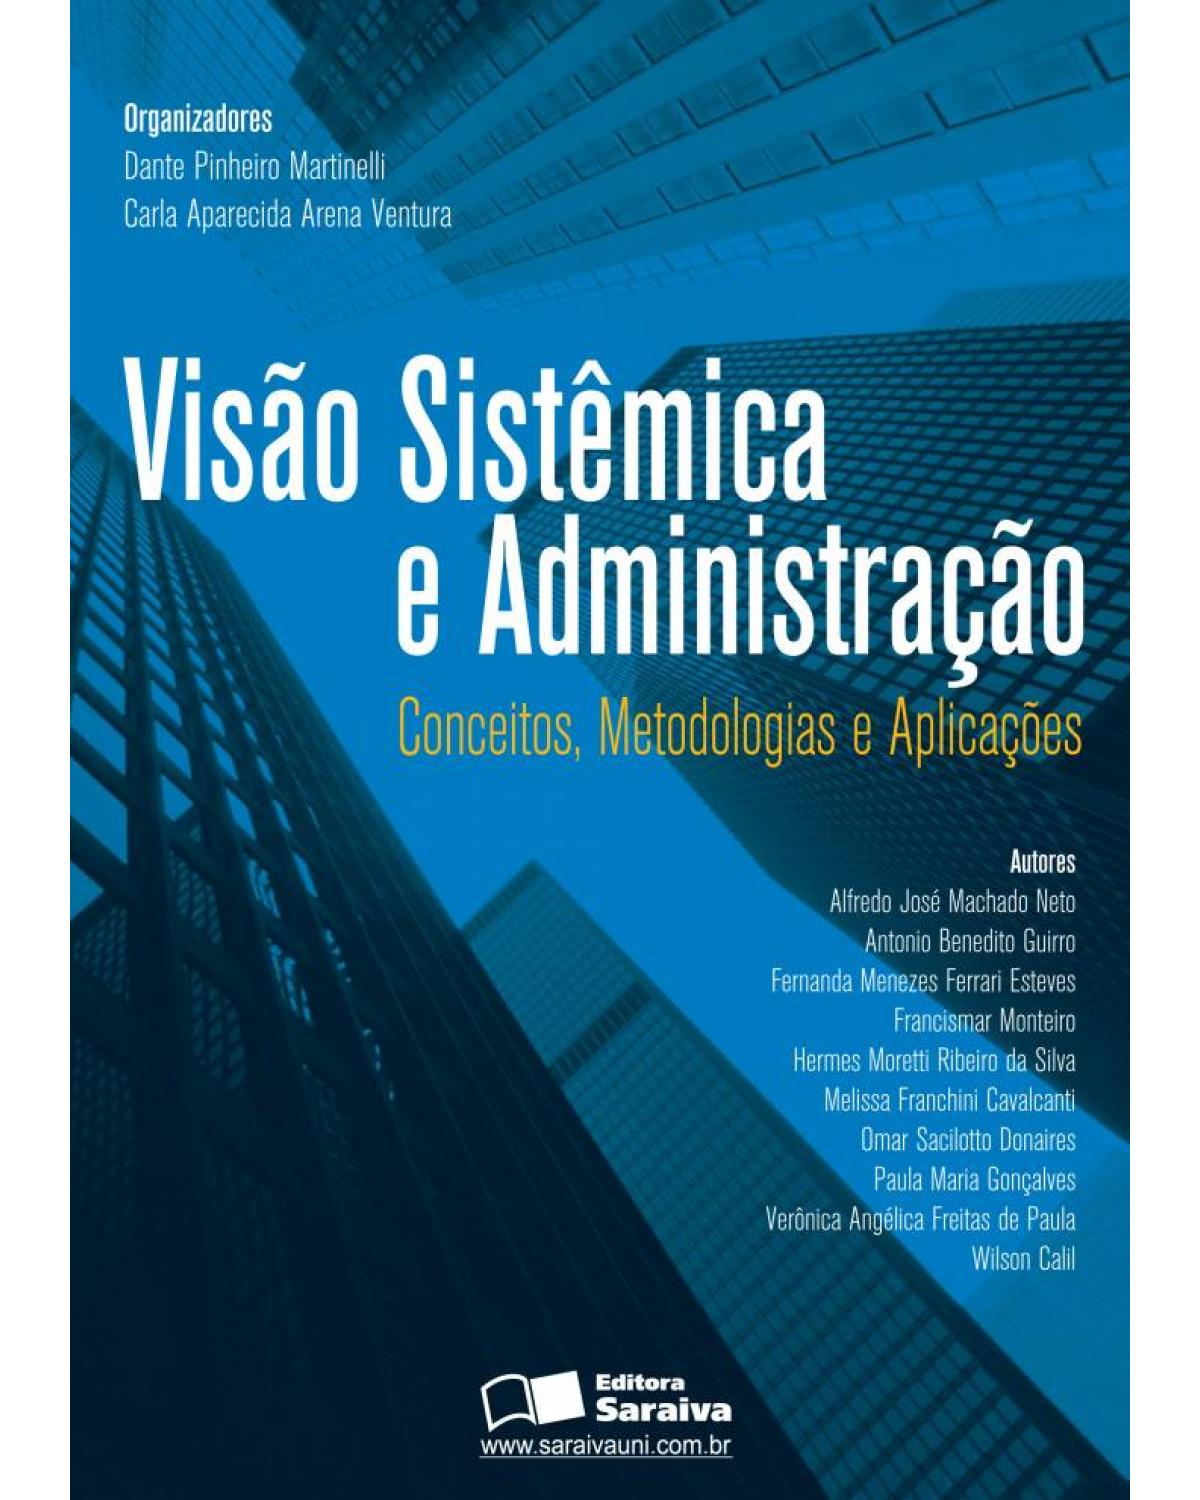 Visão sistêmica e administração - conceitos, metodologias e aplicações - 1ª Edição | 2006